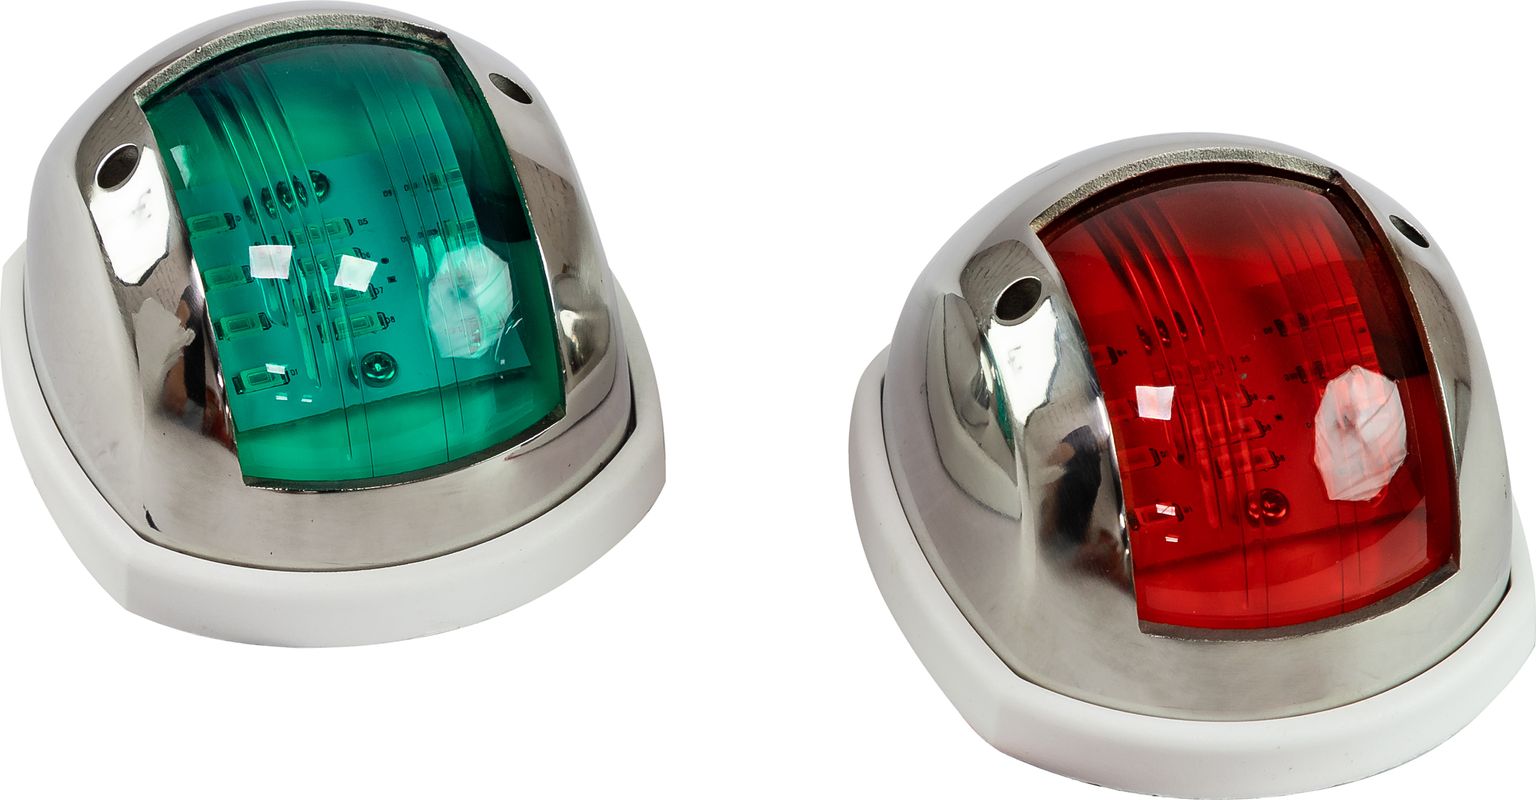 Огни ходовые 89х55 мм комплект (красный, зеленый), LED, нержавеющий корпус LPSDLPTLED0289 огни ходовые 89х55 мм комплект красный зеленый led нержавеющий корпус lpsdlptled0289